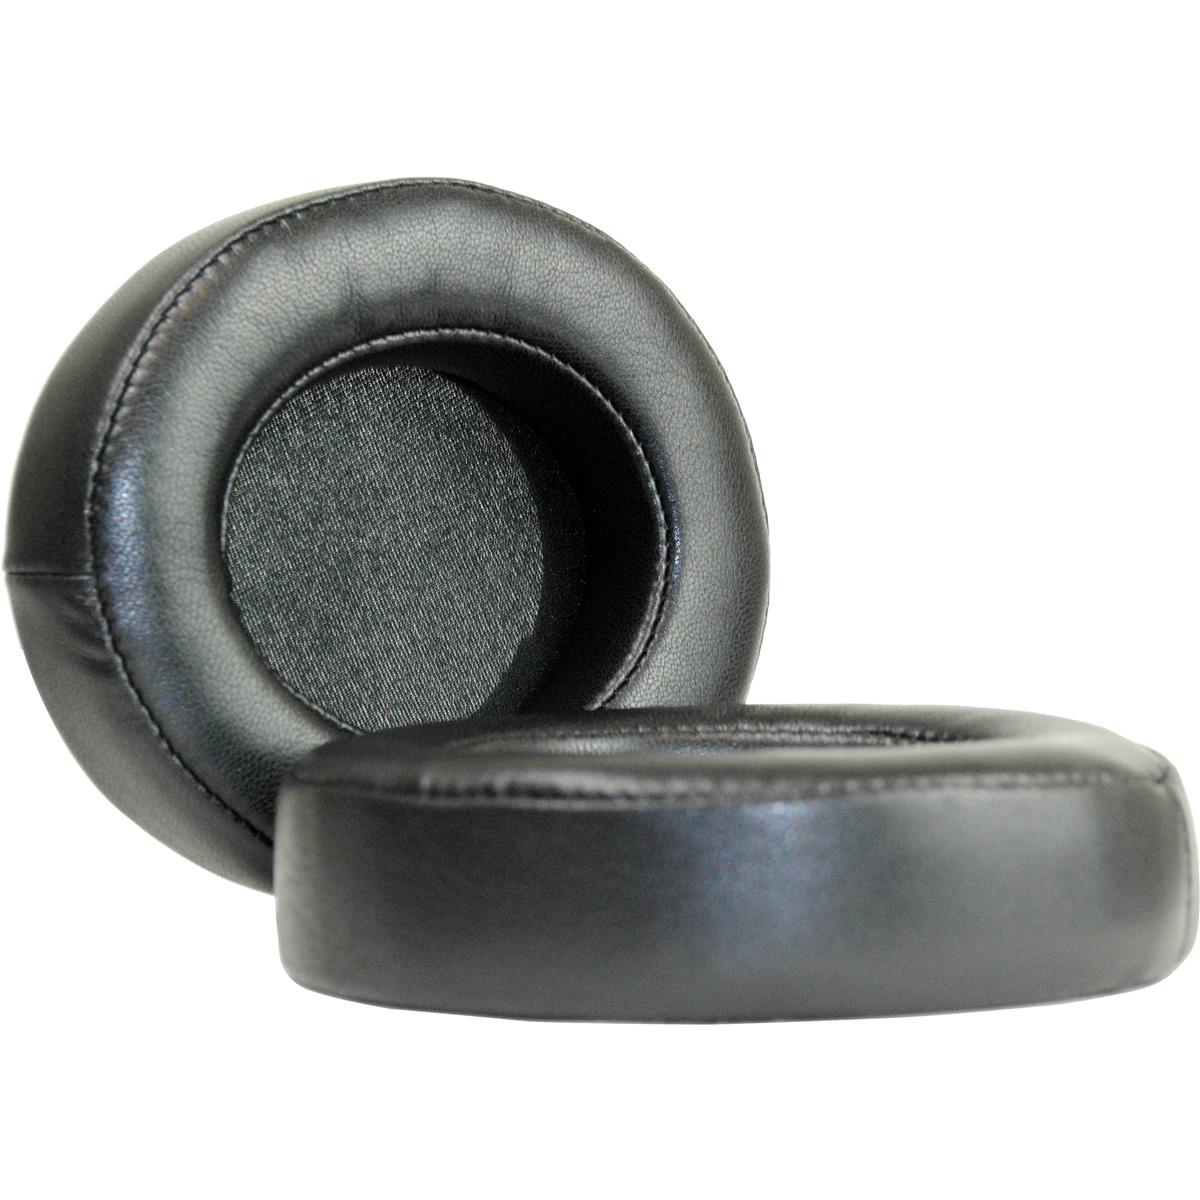 Image of Dekoni Audio Choice Leather Ear Pads for Razer Kraken Pro V2 Headphones